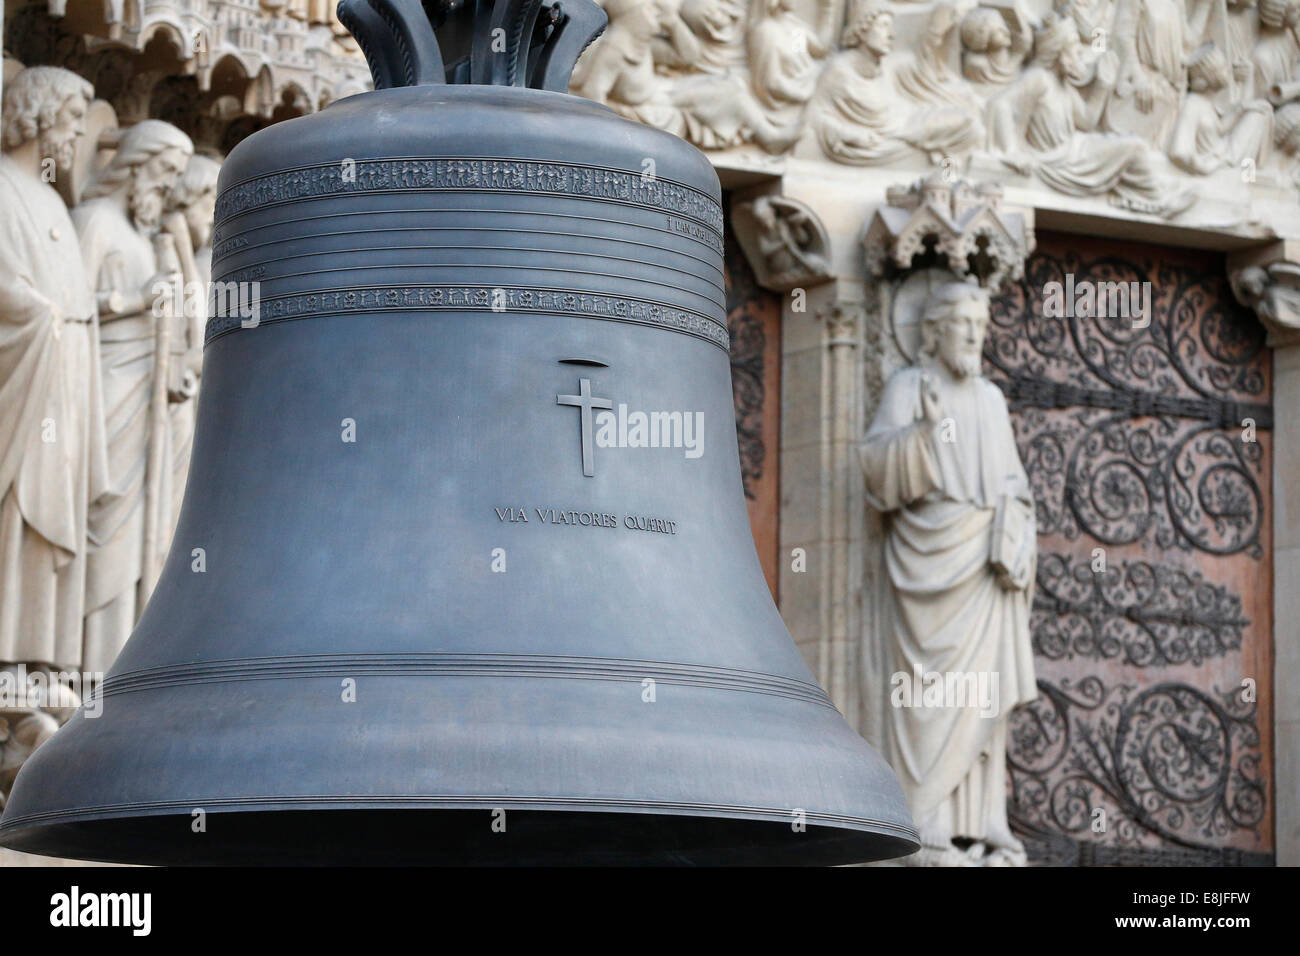 850ème anniversaire de Notre-Dame de Paris. L'arrivée de la nouvelle cloche carillon. Baptisé 'Marie', la plus grande cloche peser 6 tonnes et pla Banque D'Images